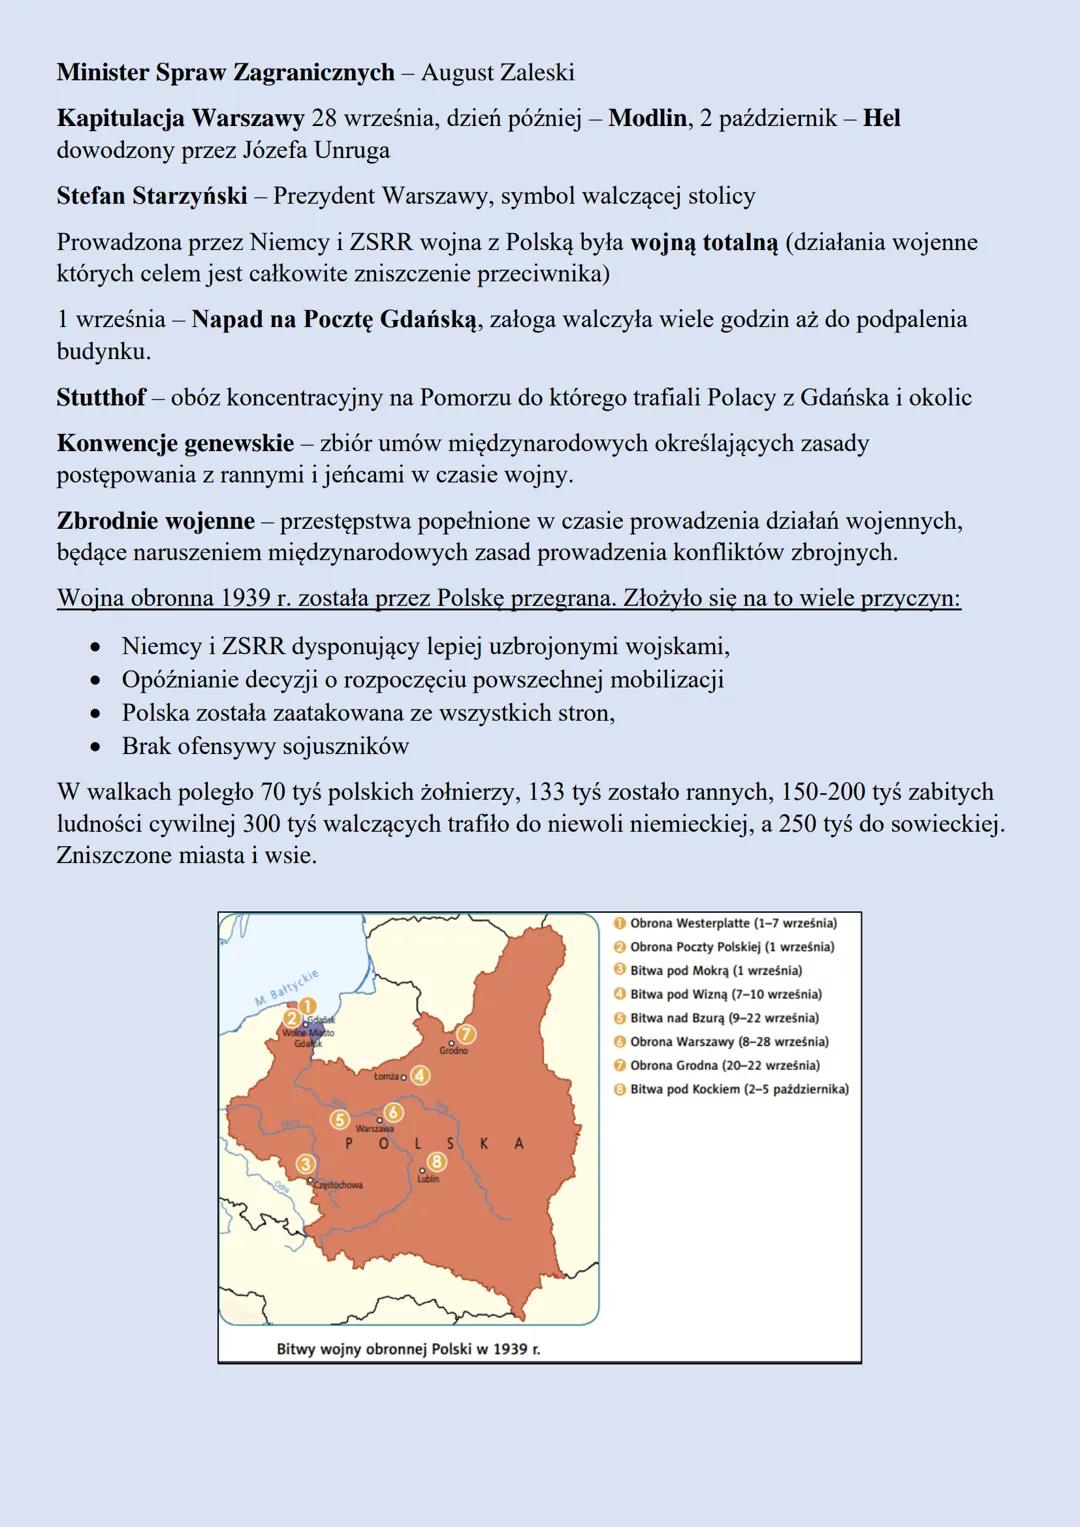 Wojna obronna Polski w 1939 r.
23 sierpnia 1939 r. – Pakt Ribbentrop-Mołotow zawarty przez III Rzeszę i ZSRR.
Podzielenie Polski pomiędzy Ni